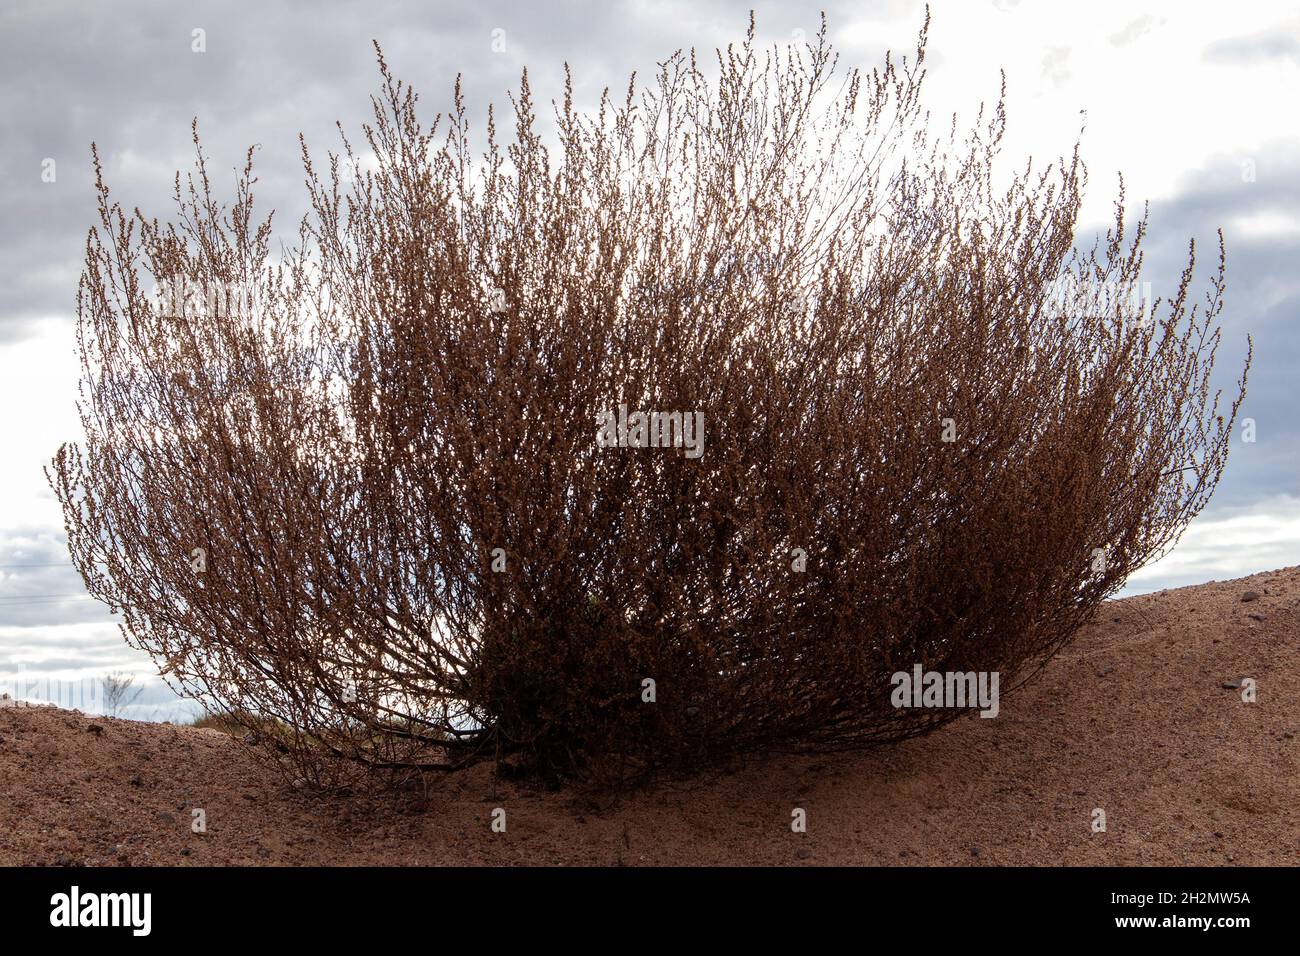 Rigoglioso cespuglio di steppa pianta che cresce su collina sabbiosa contro cielo nuvoloso Foto Stock